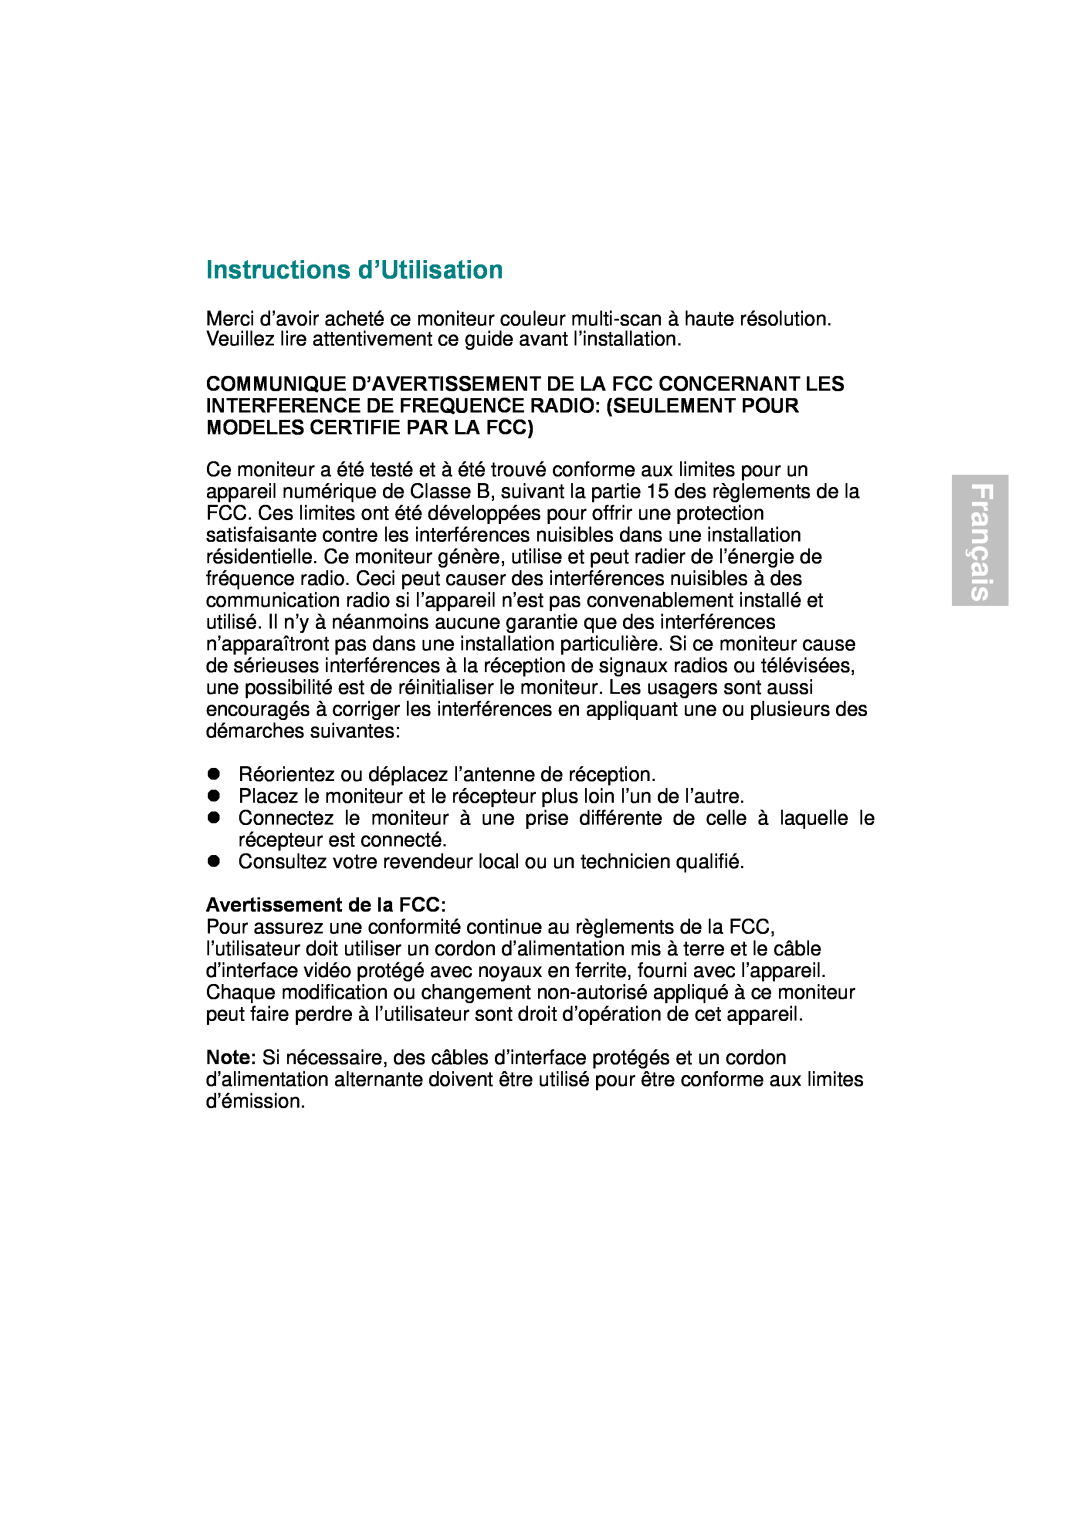 AOC 177S manual Français, Instructions d’Utilisation, Avertissement de la FCC 